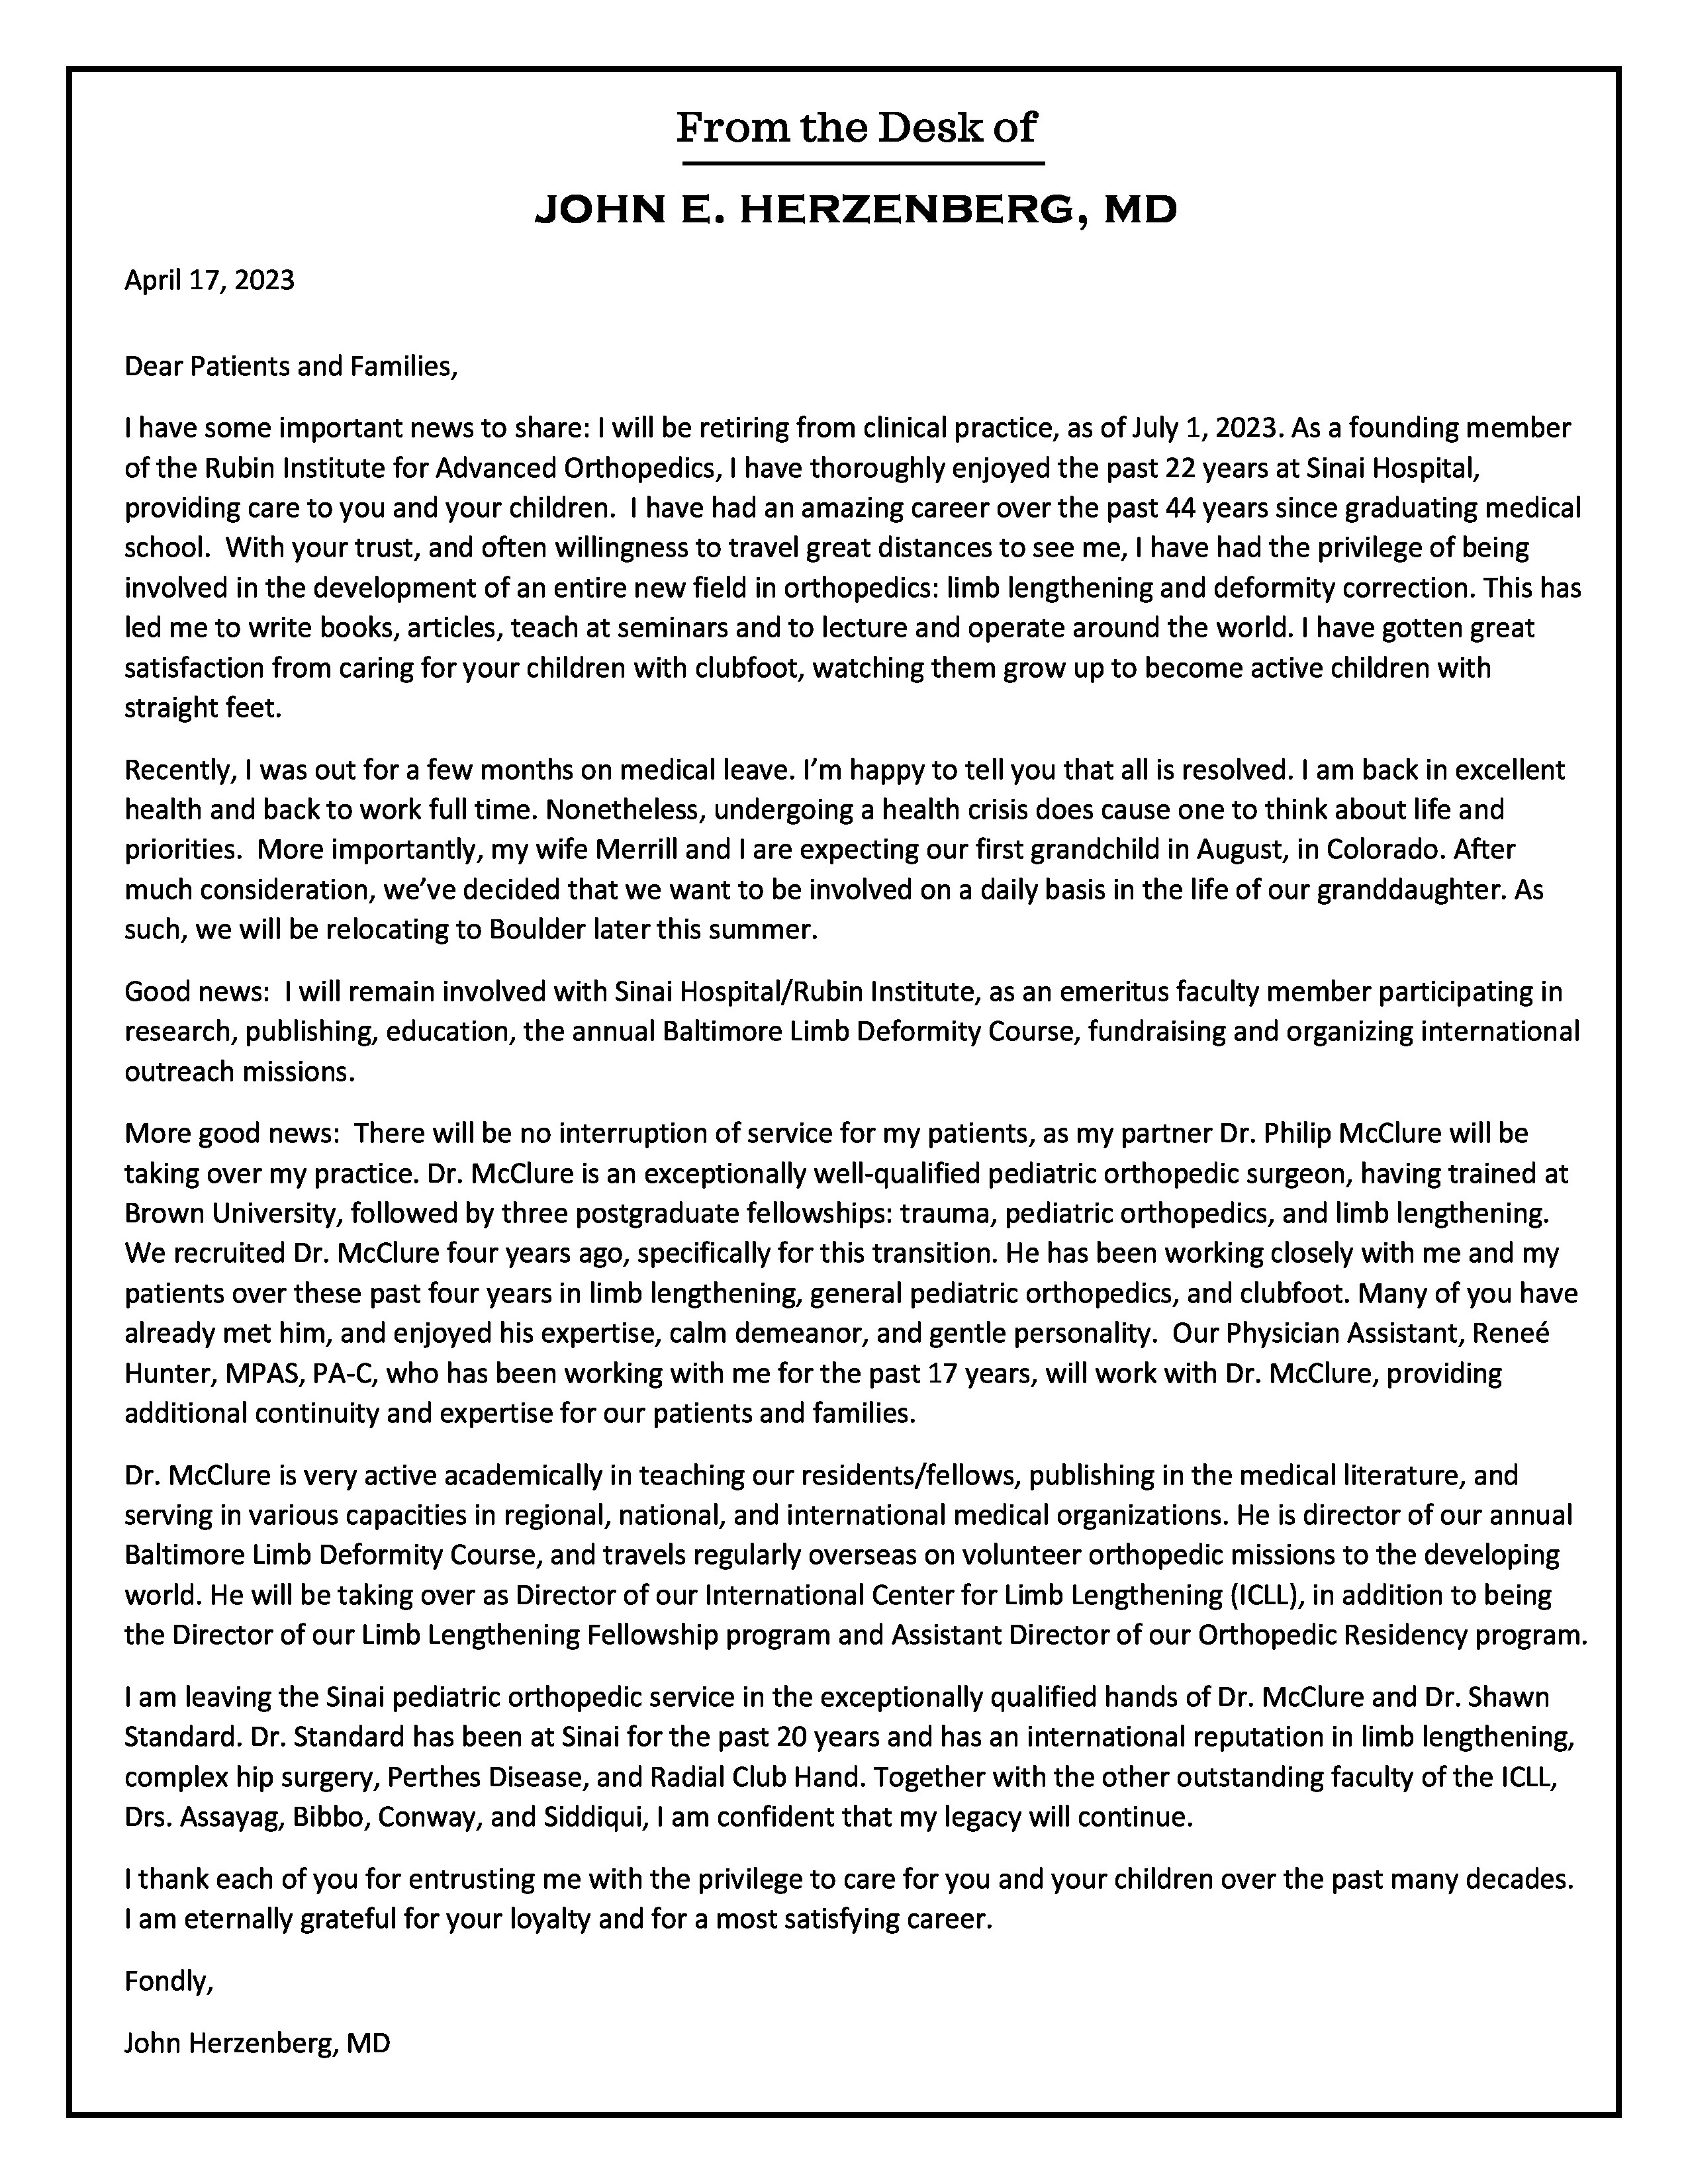 A letter from the desk of Dr. John Herzenberg announcing an International Center for Limb Lengthening leadership transition